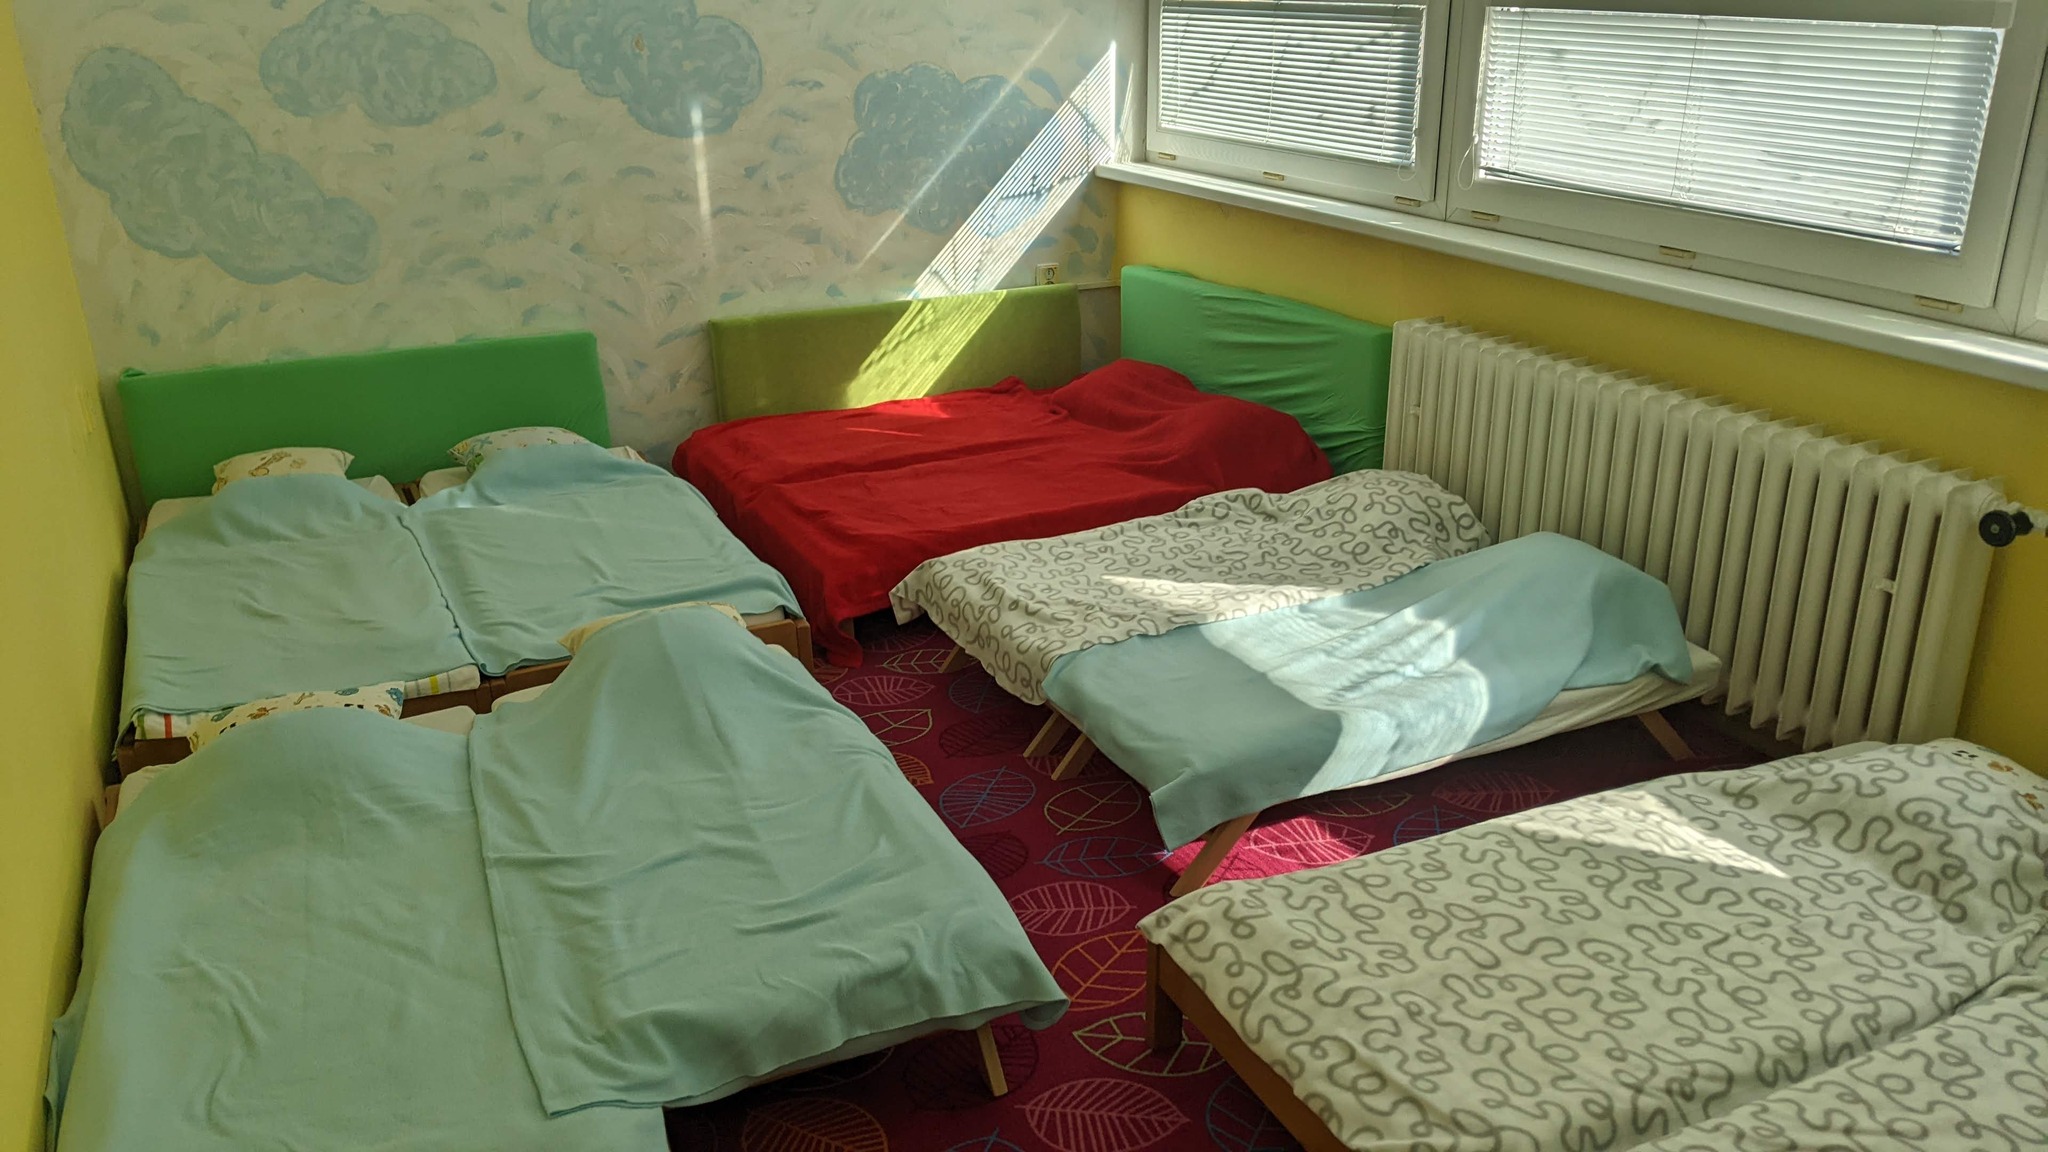 dubravka-otvara-docasne-denne-centrum-pre-deti-z-ukrajiny